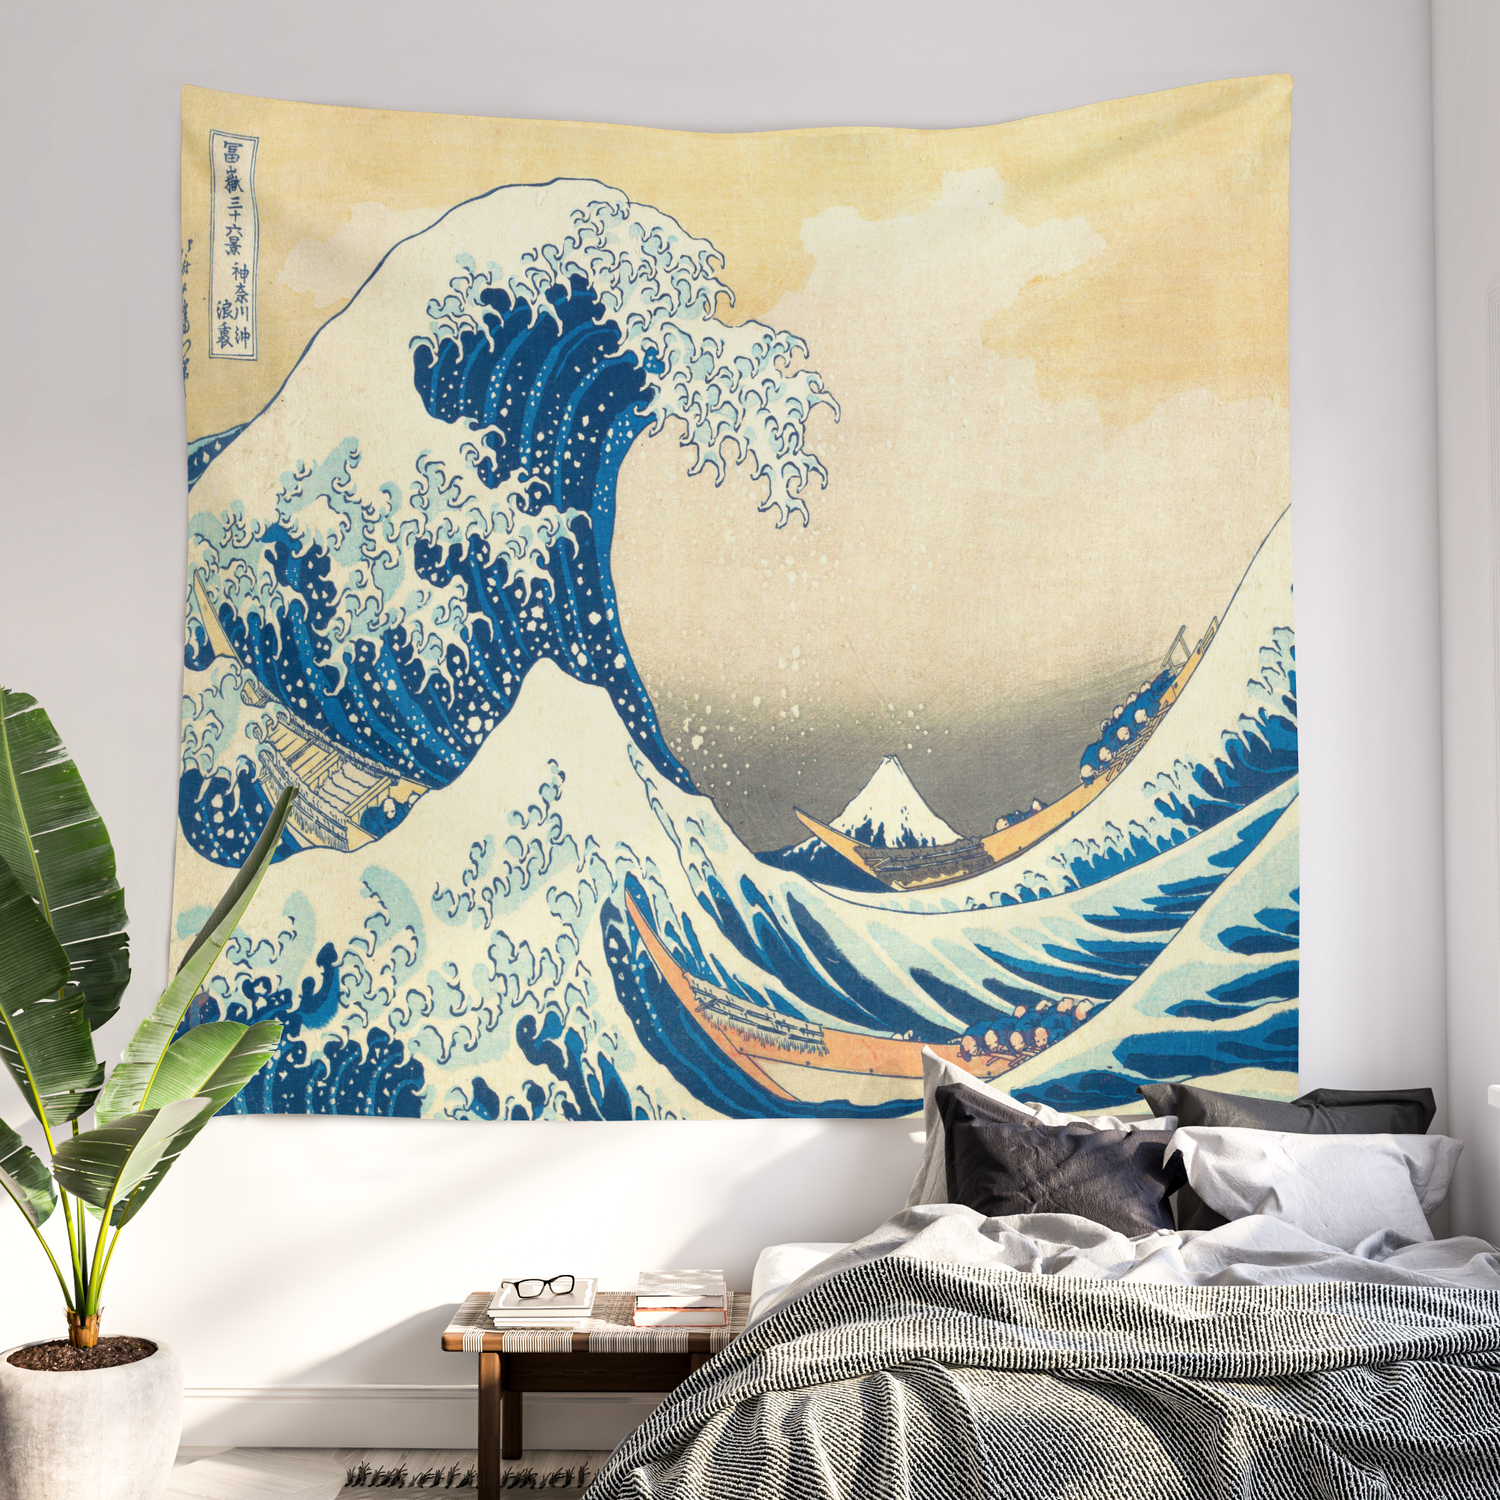 Japanese Woodblock Print The Great Wave Of Kanagawa By Katsushika Hokusai Wall Tapestry By Enshape Society6